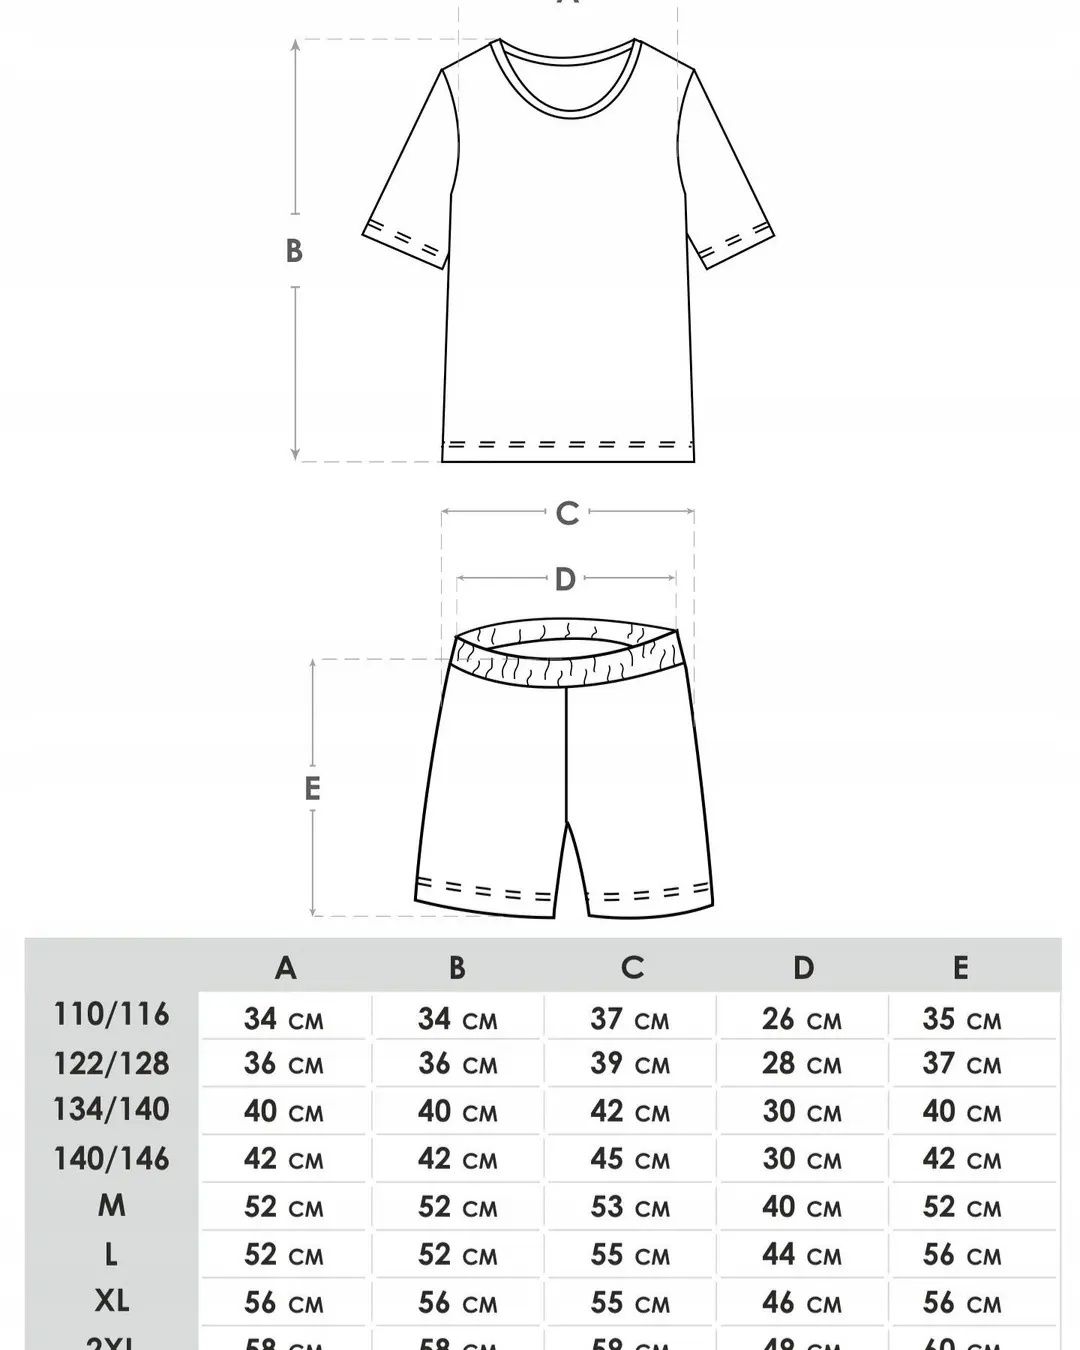 Piżama chłopięca krótka - rozmiar 110/116